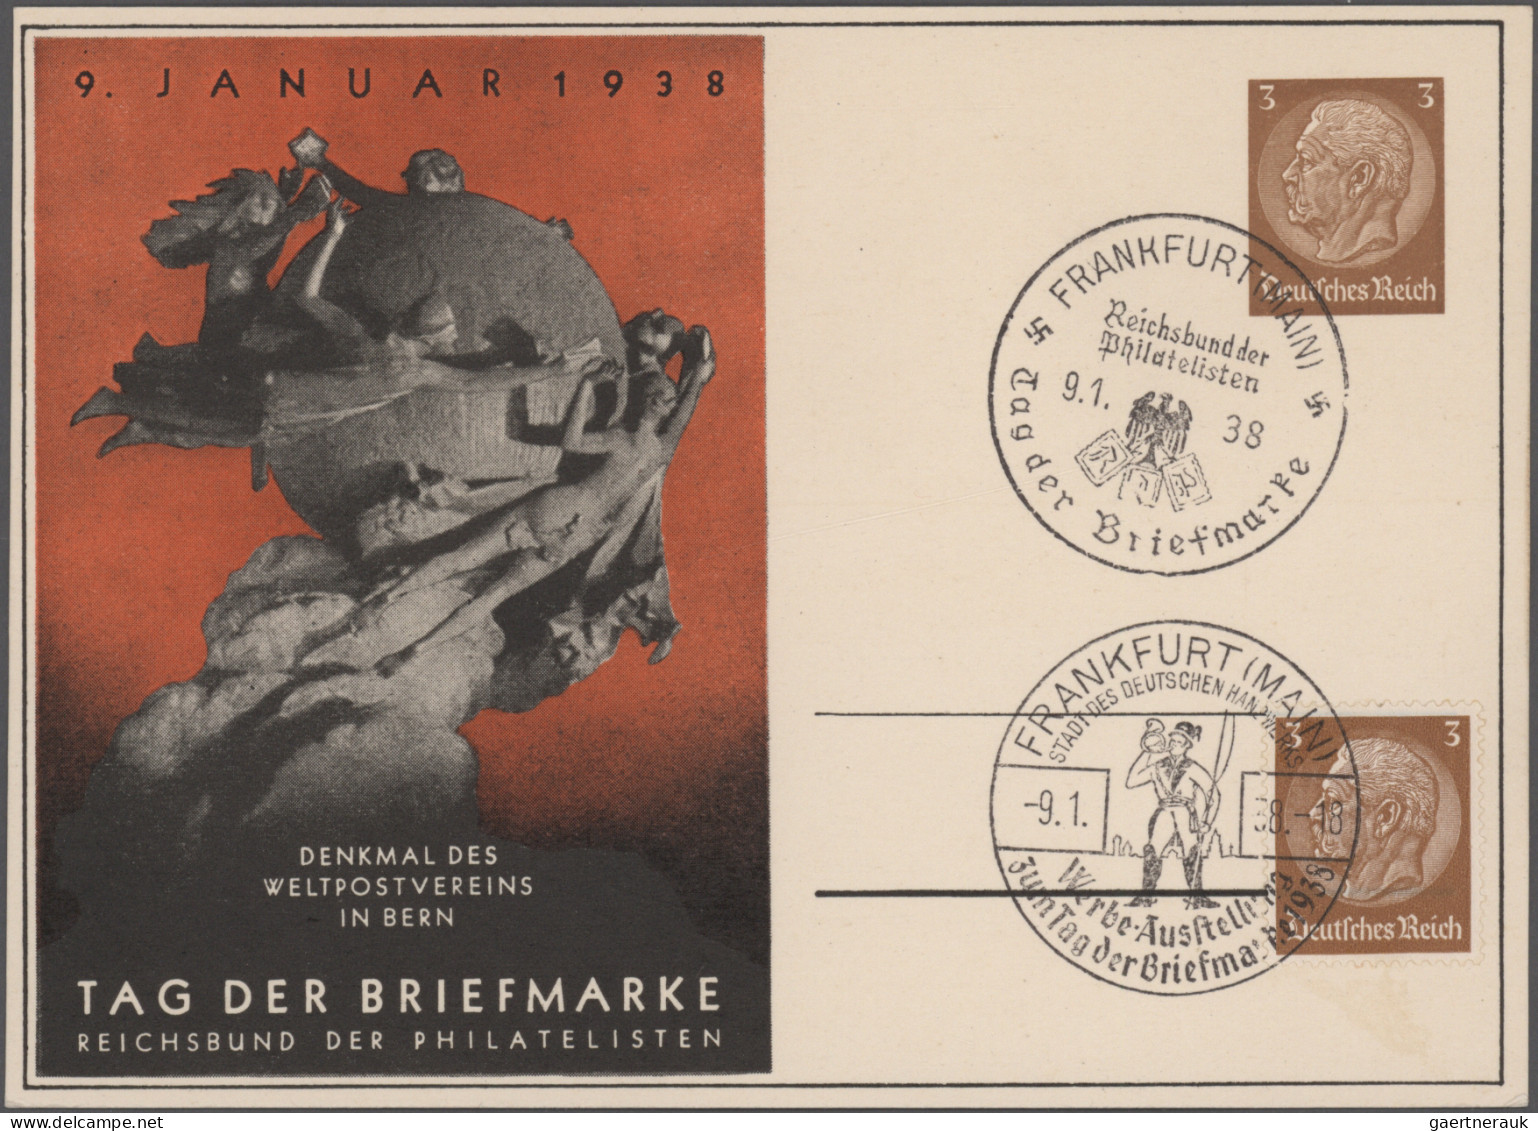 Deutsches Reich - 3. Reich: 1936/1944, Sammlung von ca. 89 Belegen mit insbesond